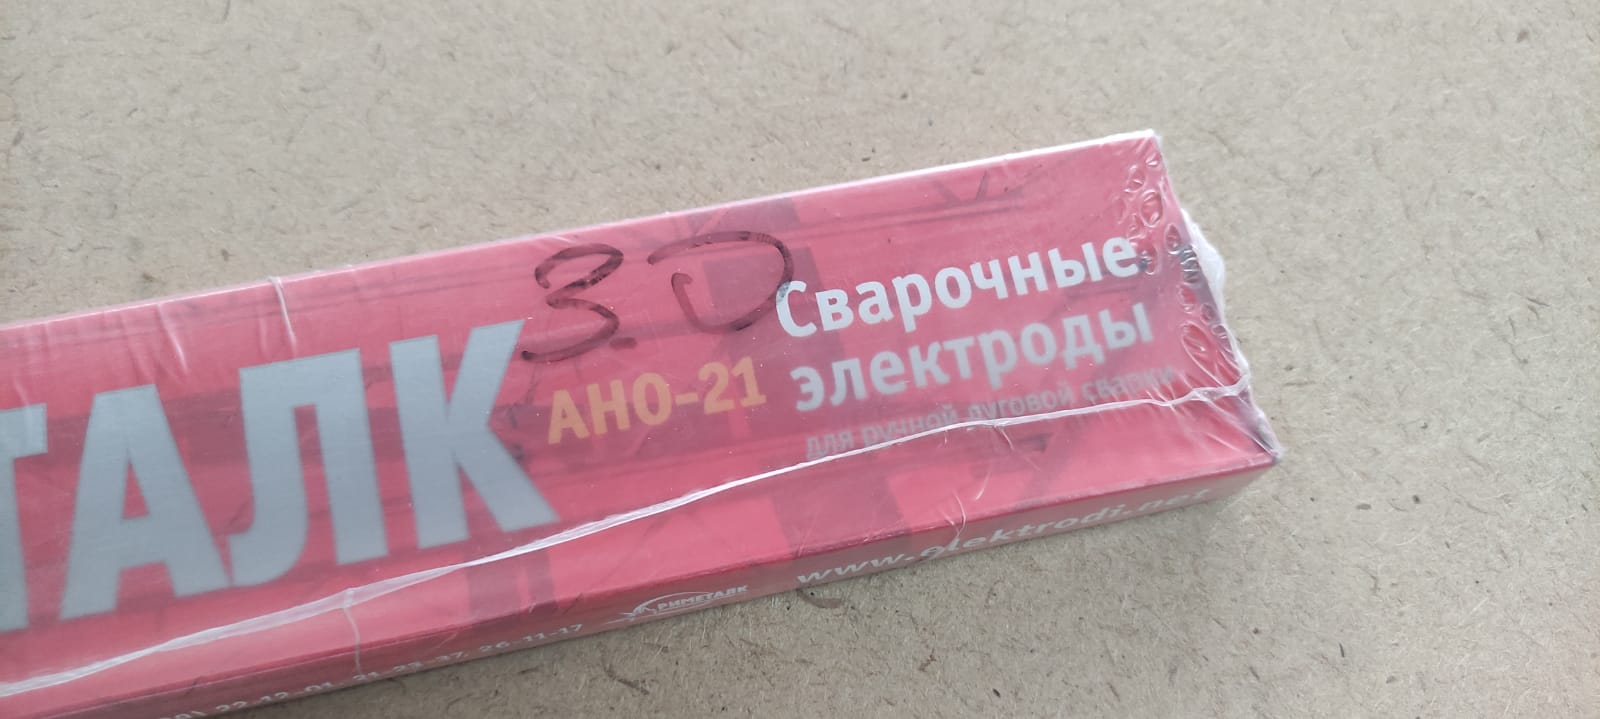 Электроды сварочные Э46-АНО-21 3 мм Риметалк 1 кг